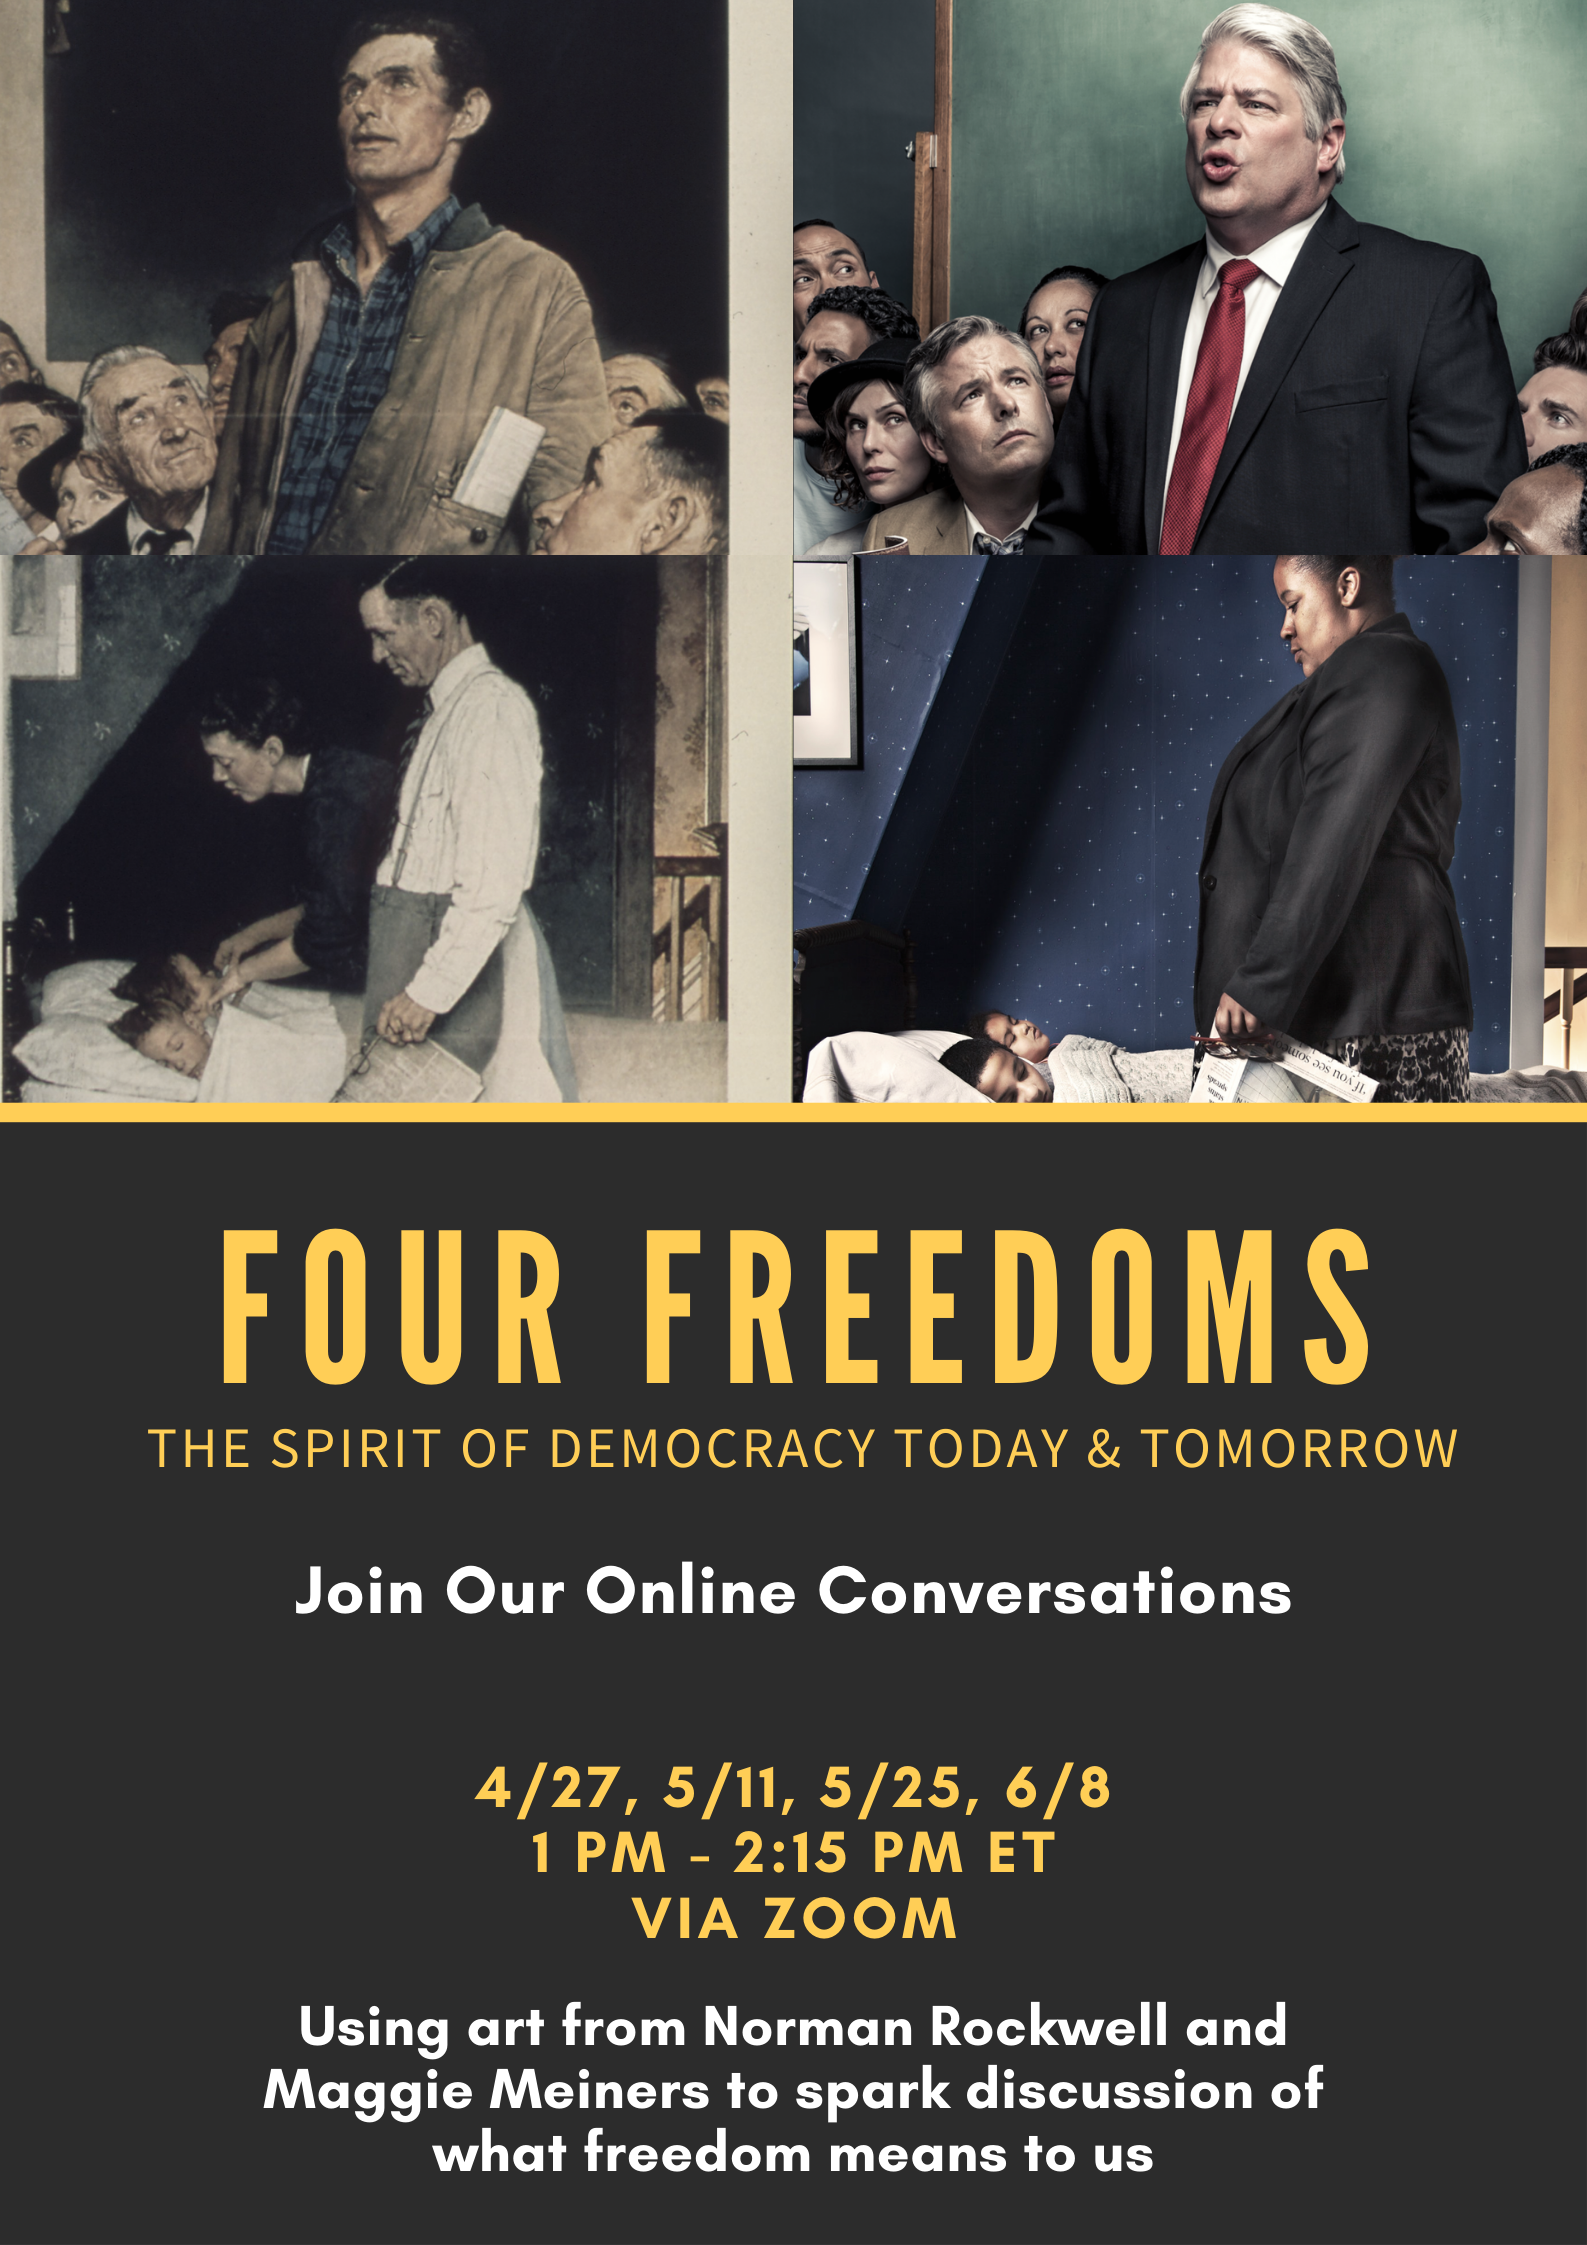 Four freedoms